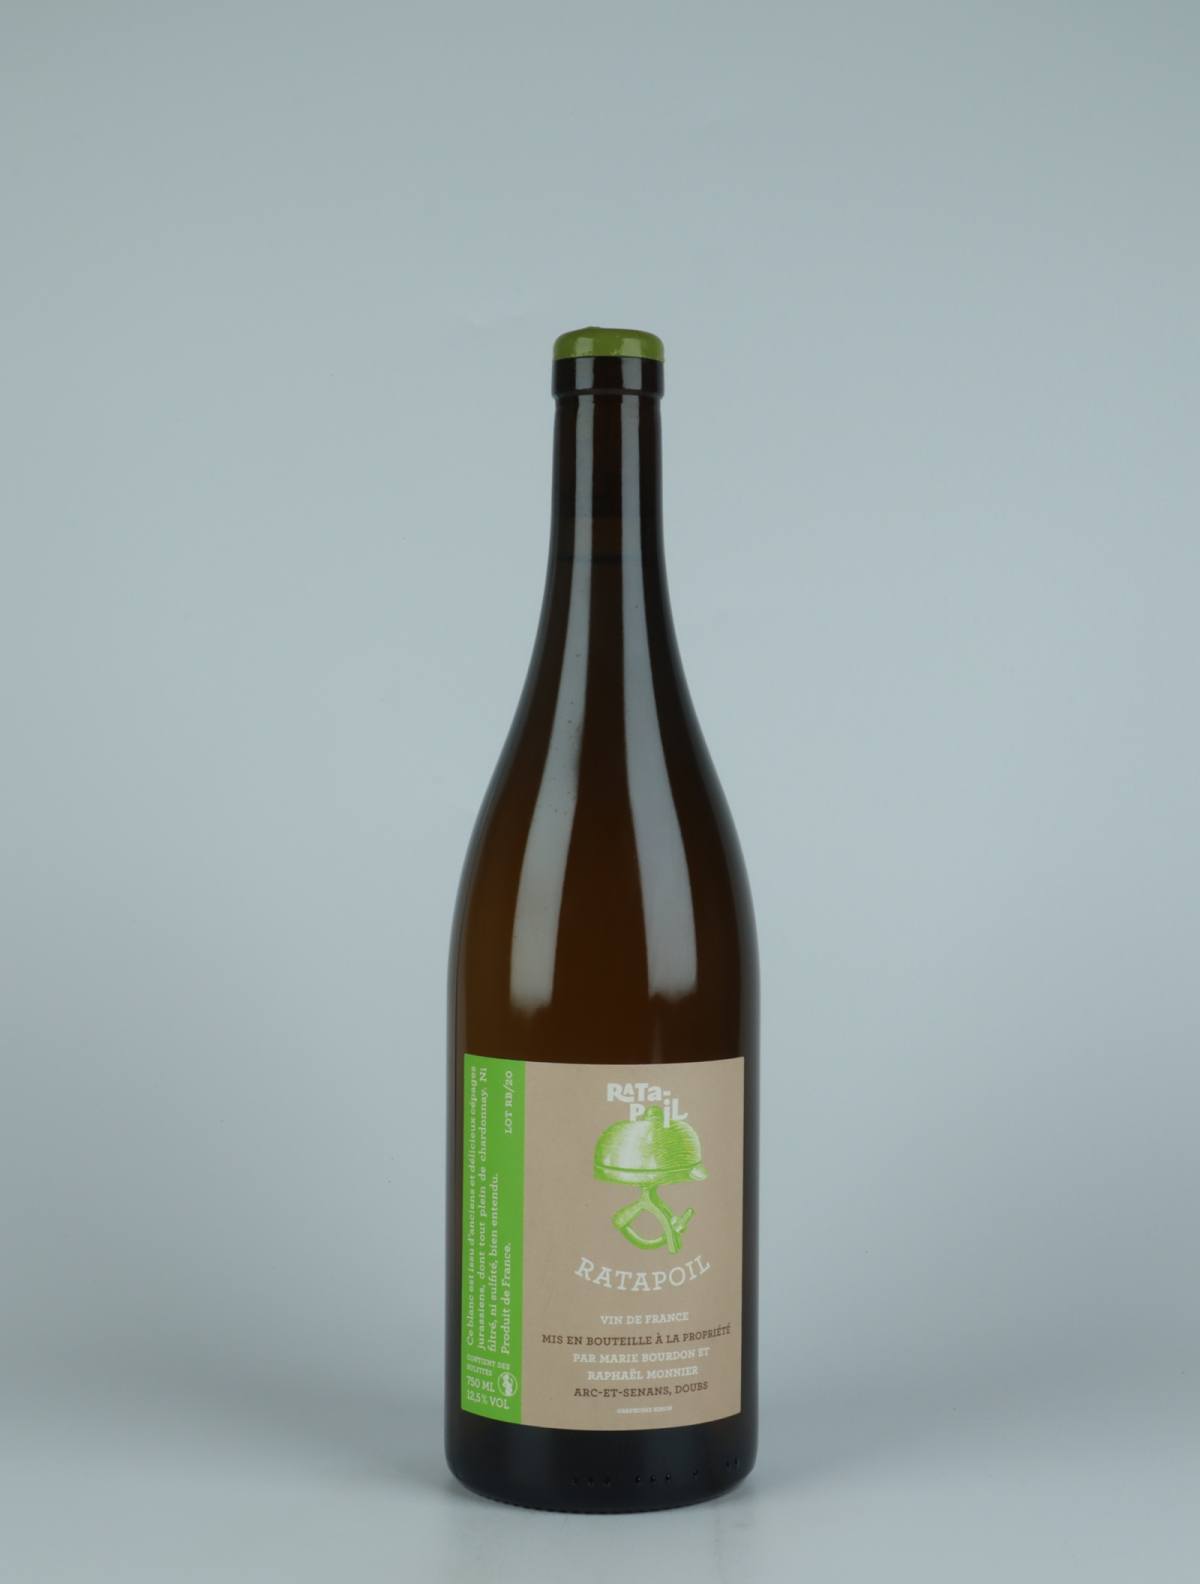 En flaske 2020 Ratapoil Blanc (Green label) Hvidvin fra Domaine Ratapoil, Jura i Frankrig